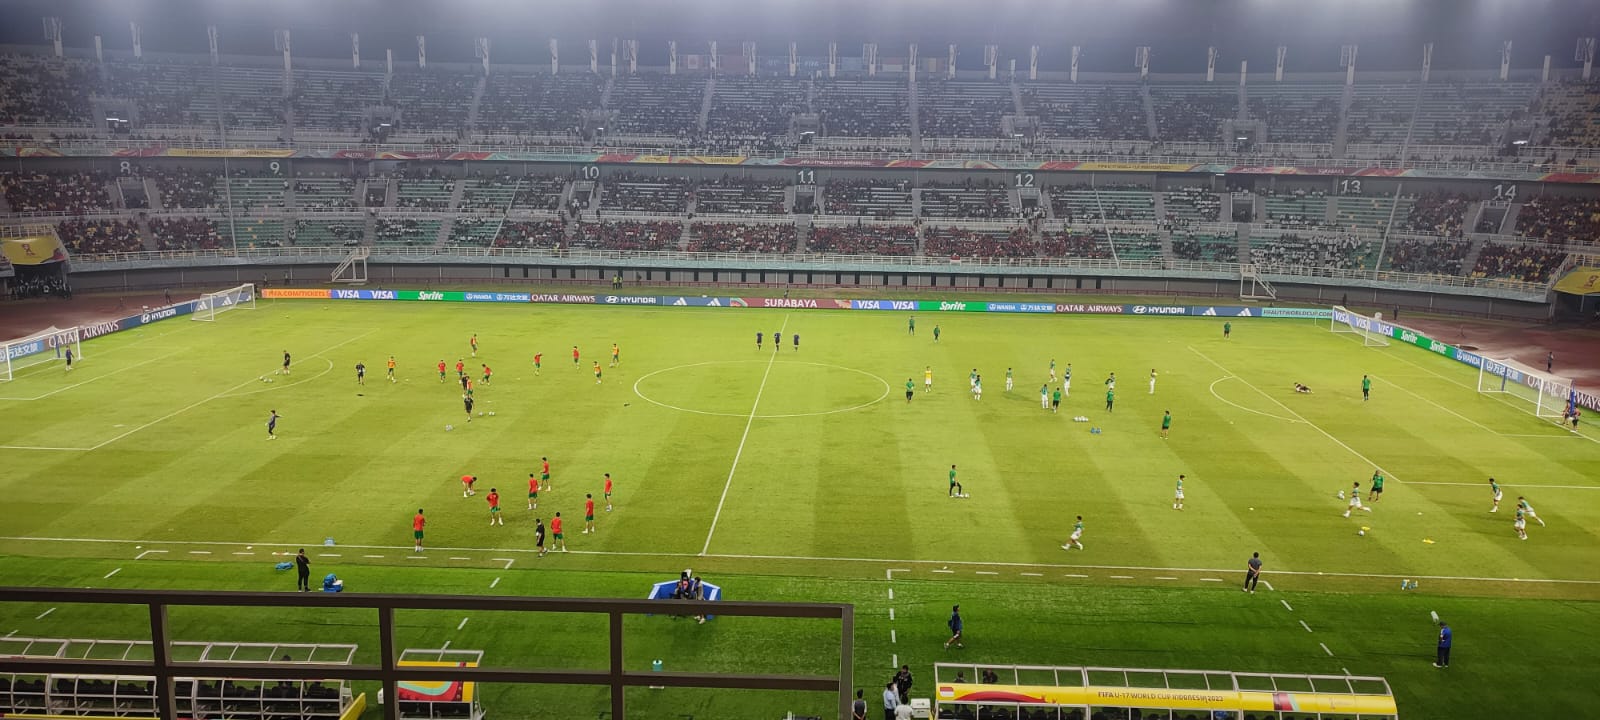 Inilah Susunan Pemain Indonesia U-17 vs Maroko U-17 Malam Ini